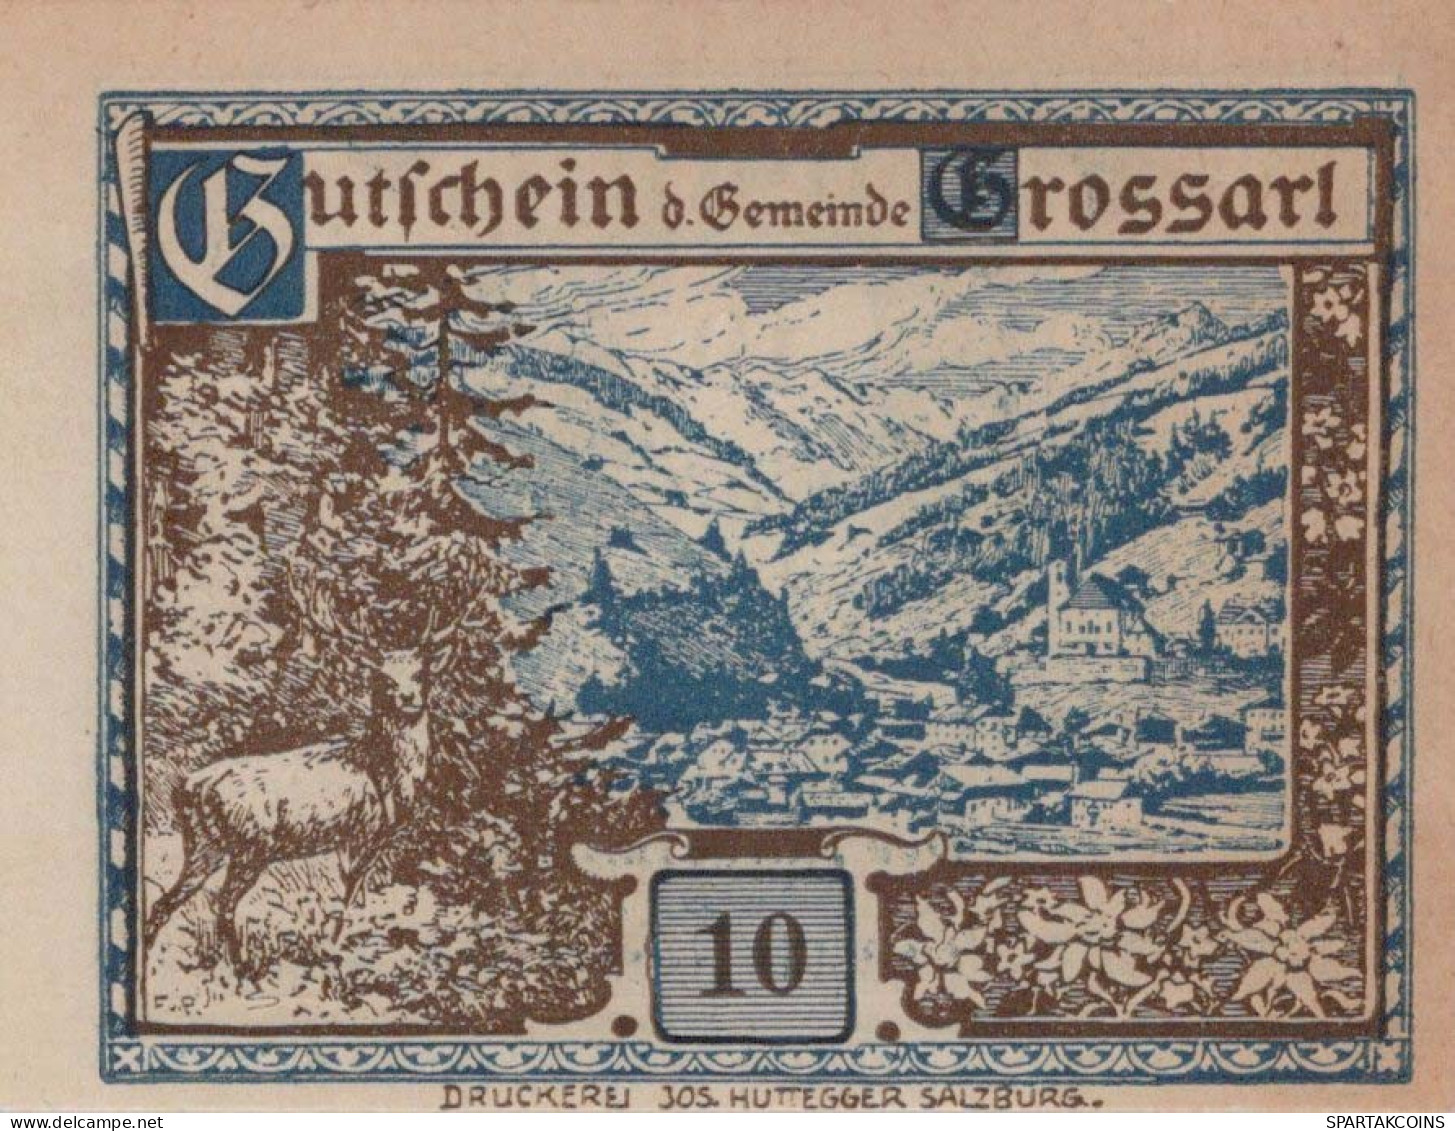 10 HELLER 1920 Stadt GROSSARL Salzburg Österreich Notgeld Banknote #PE998 - [11] Local Banknote Issues